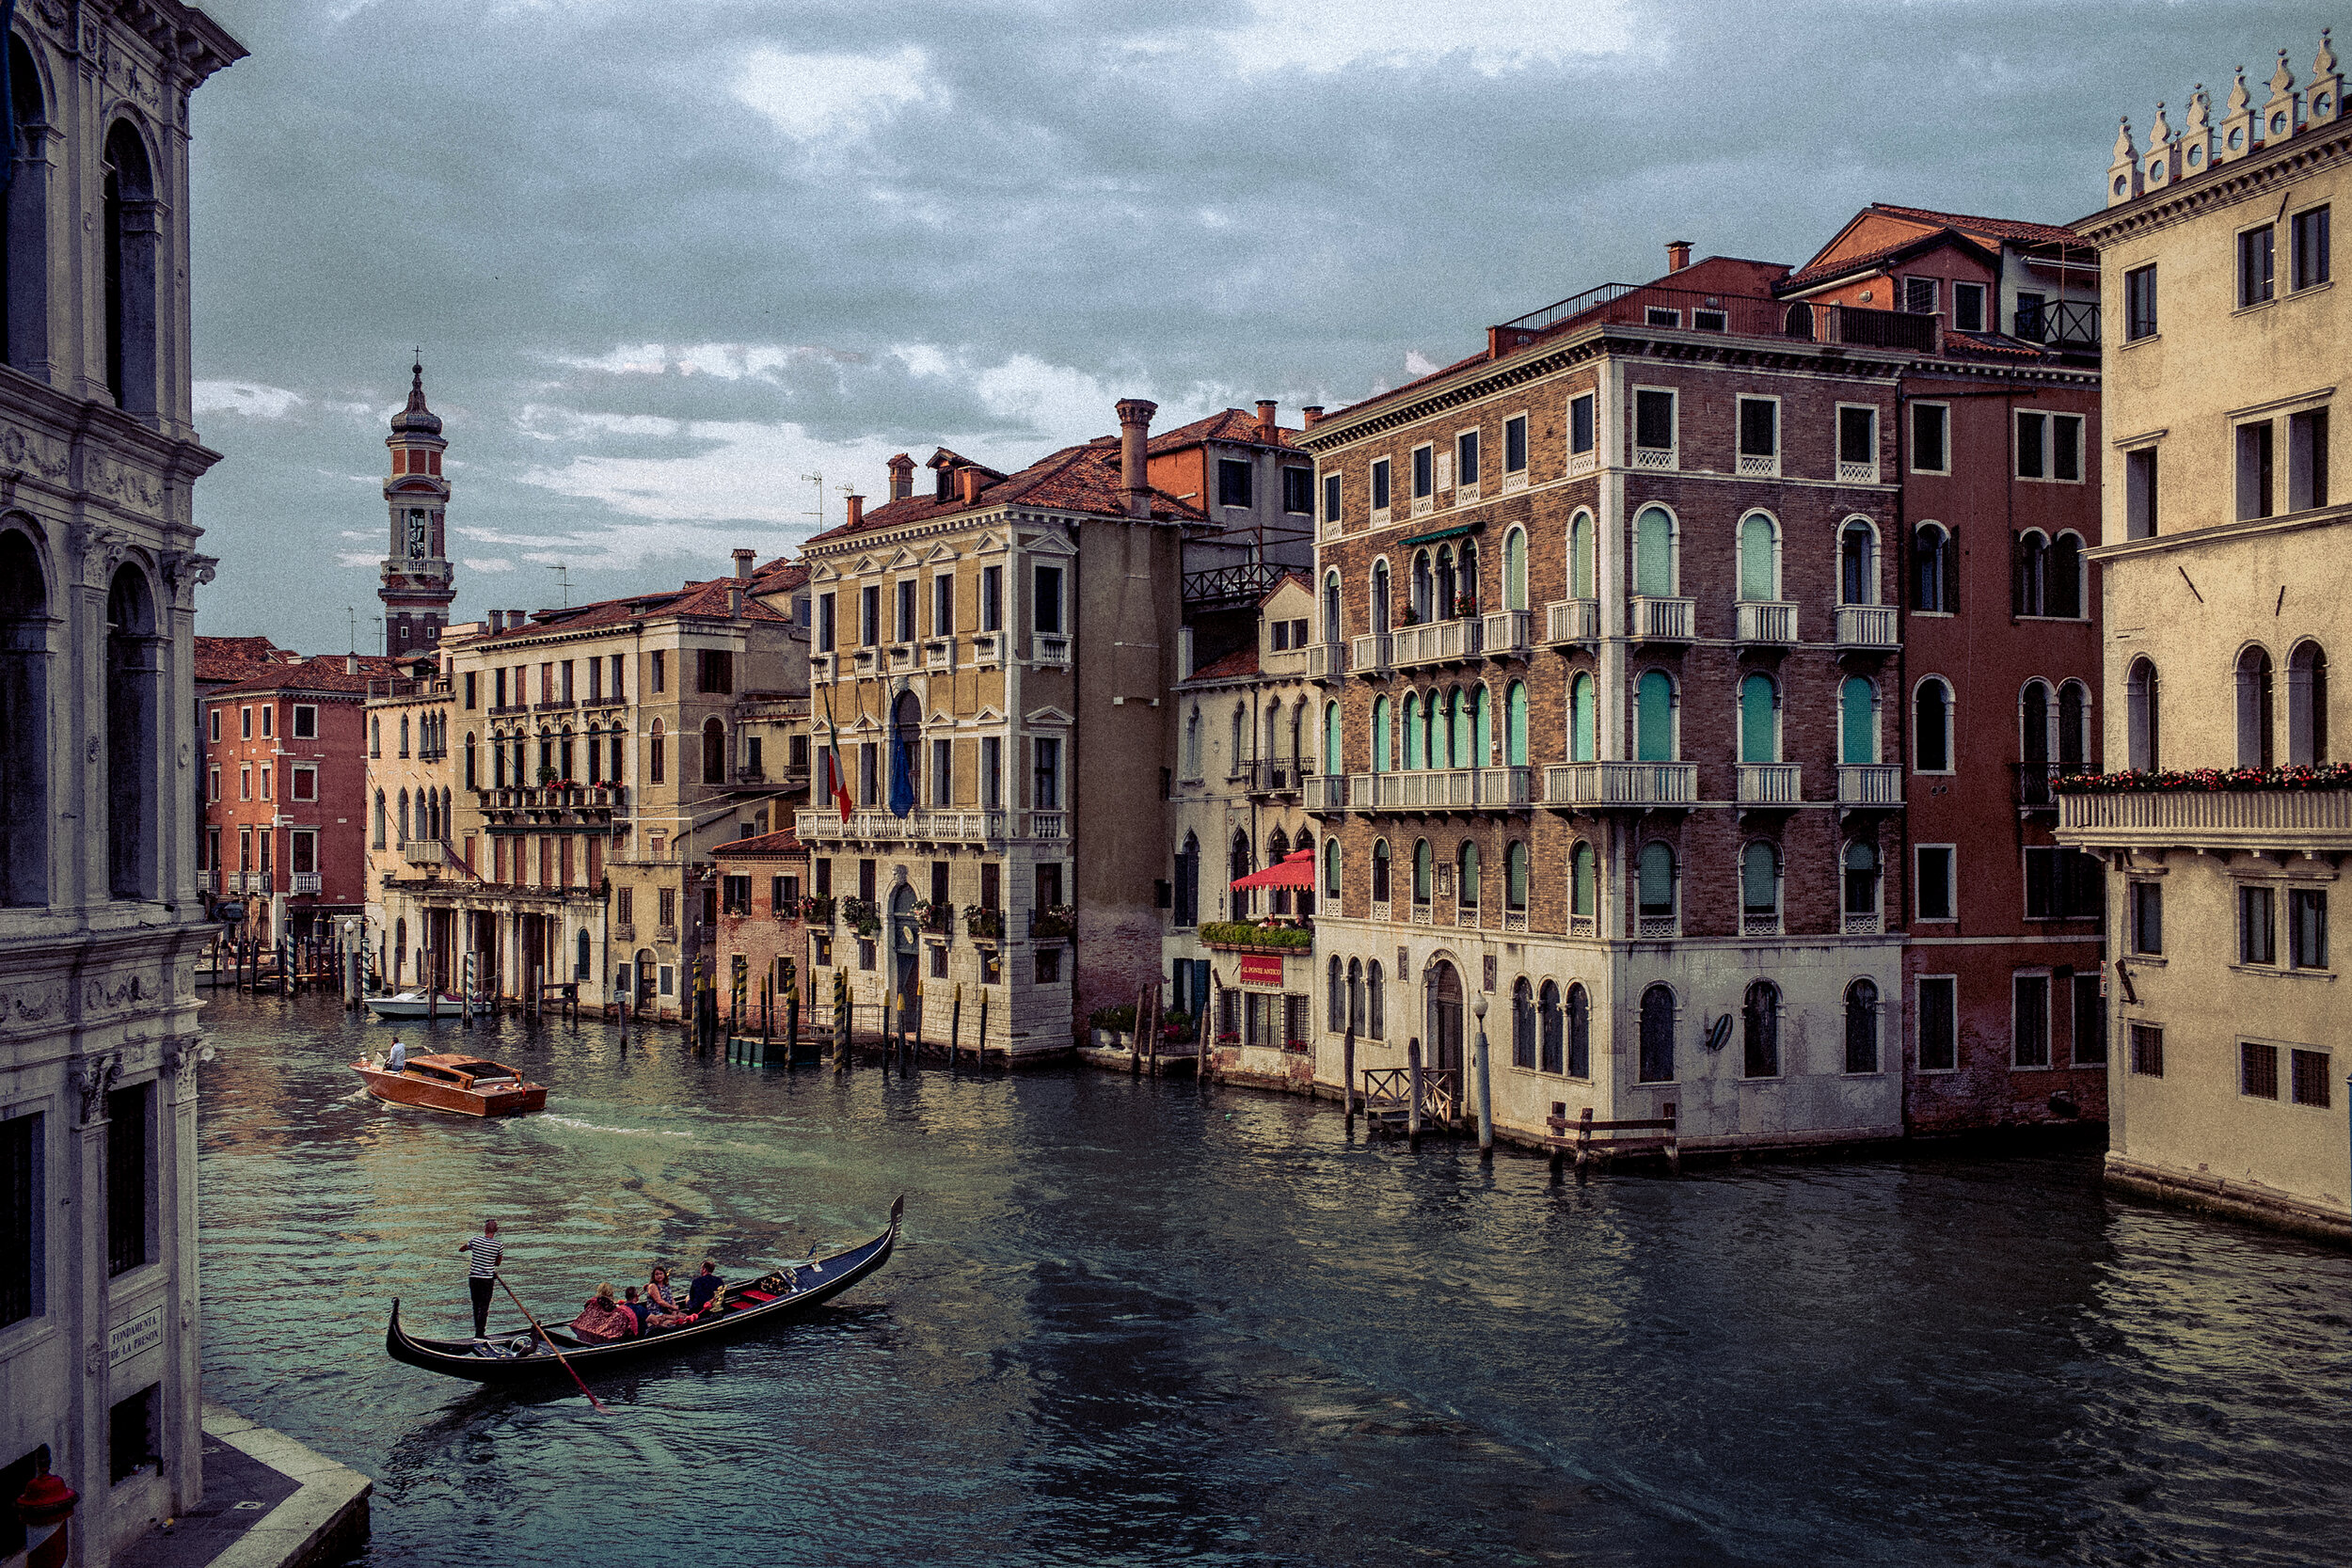  Venice, Italy. 